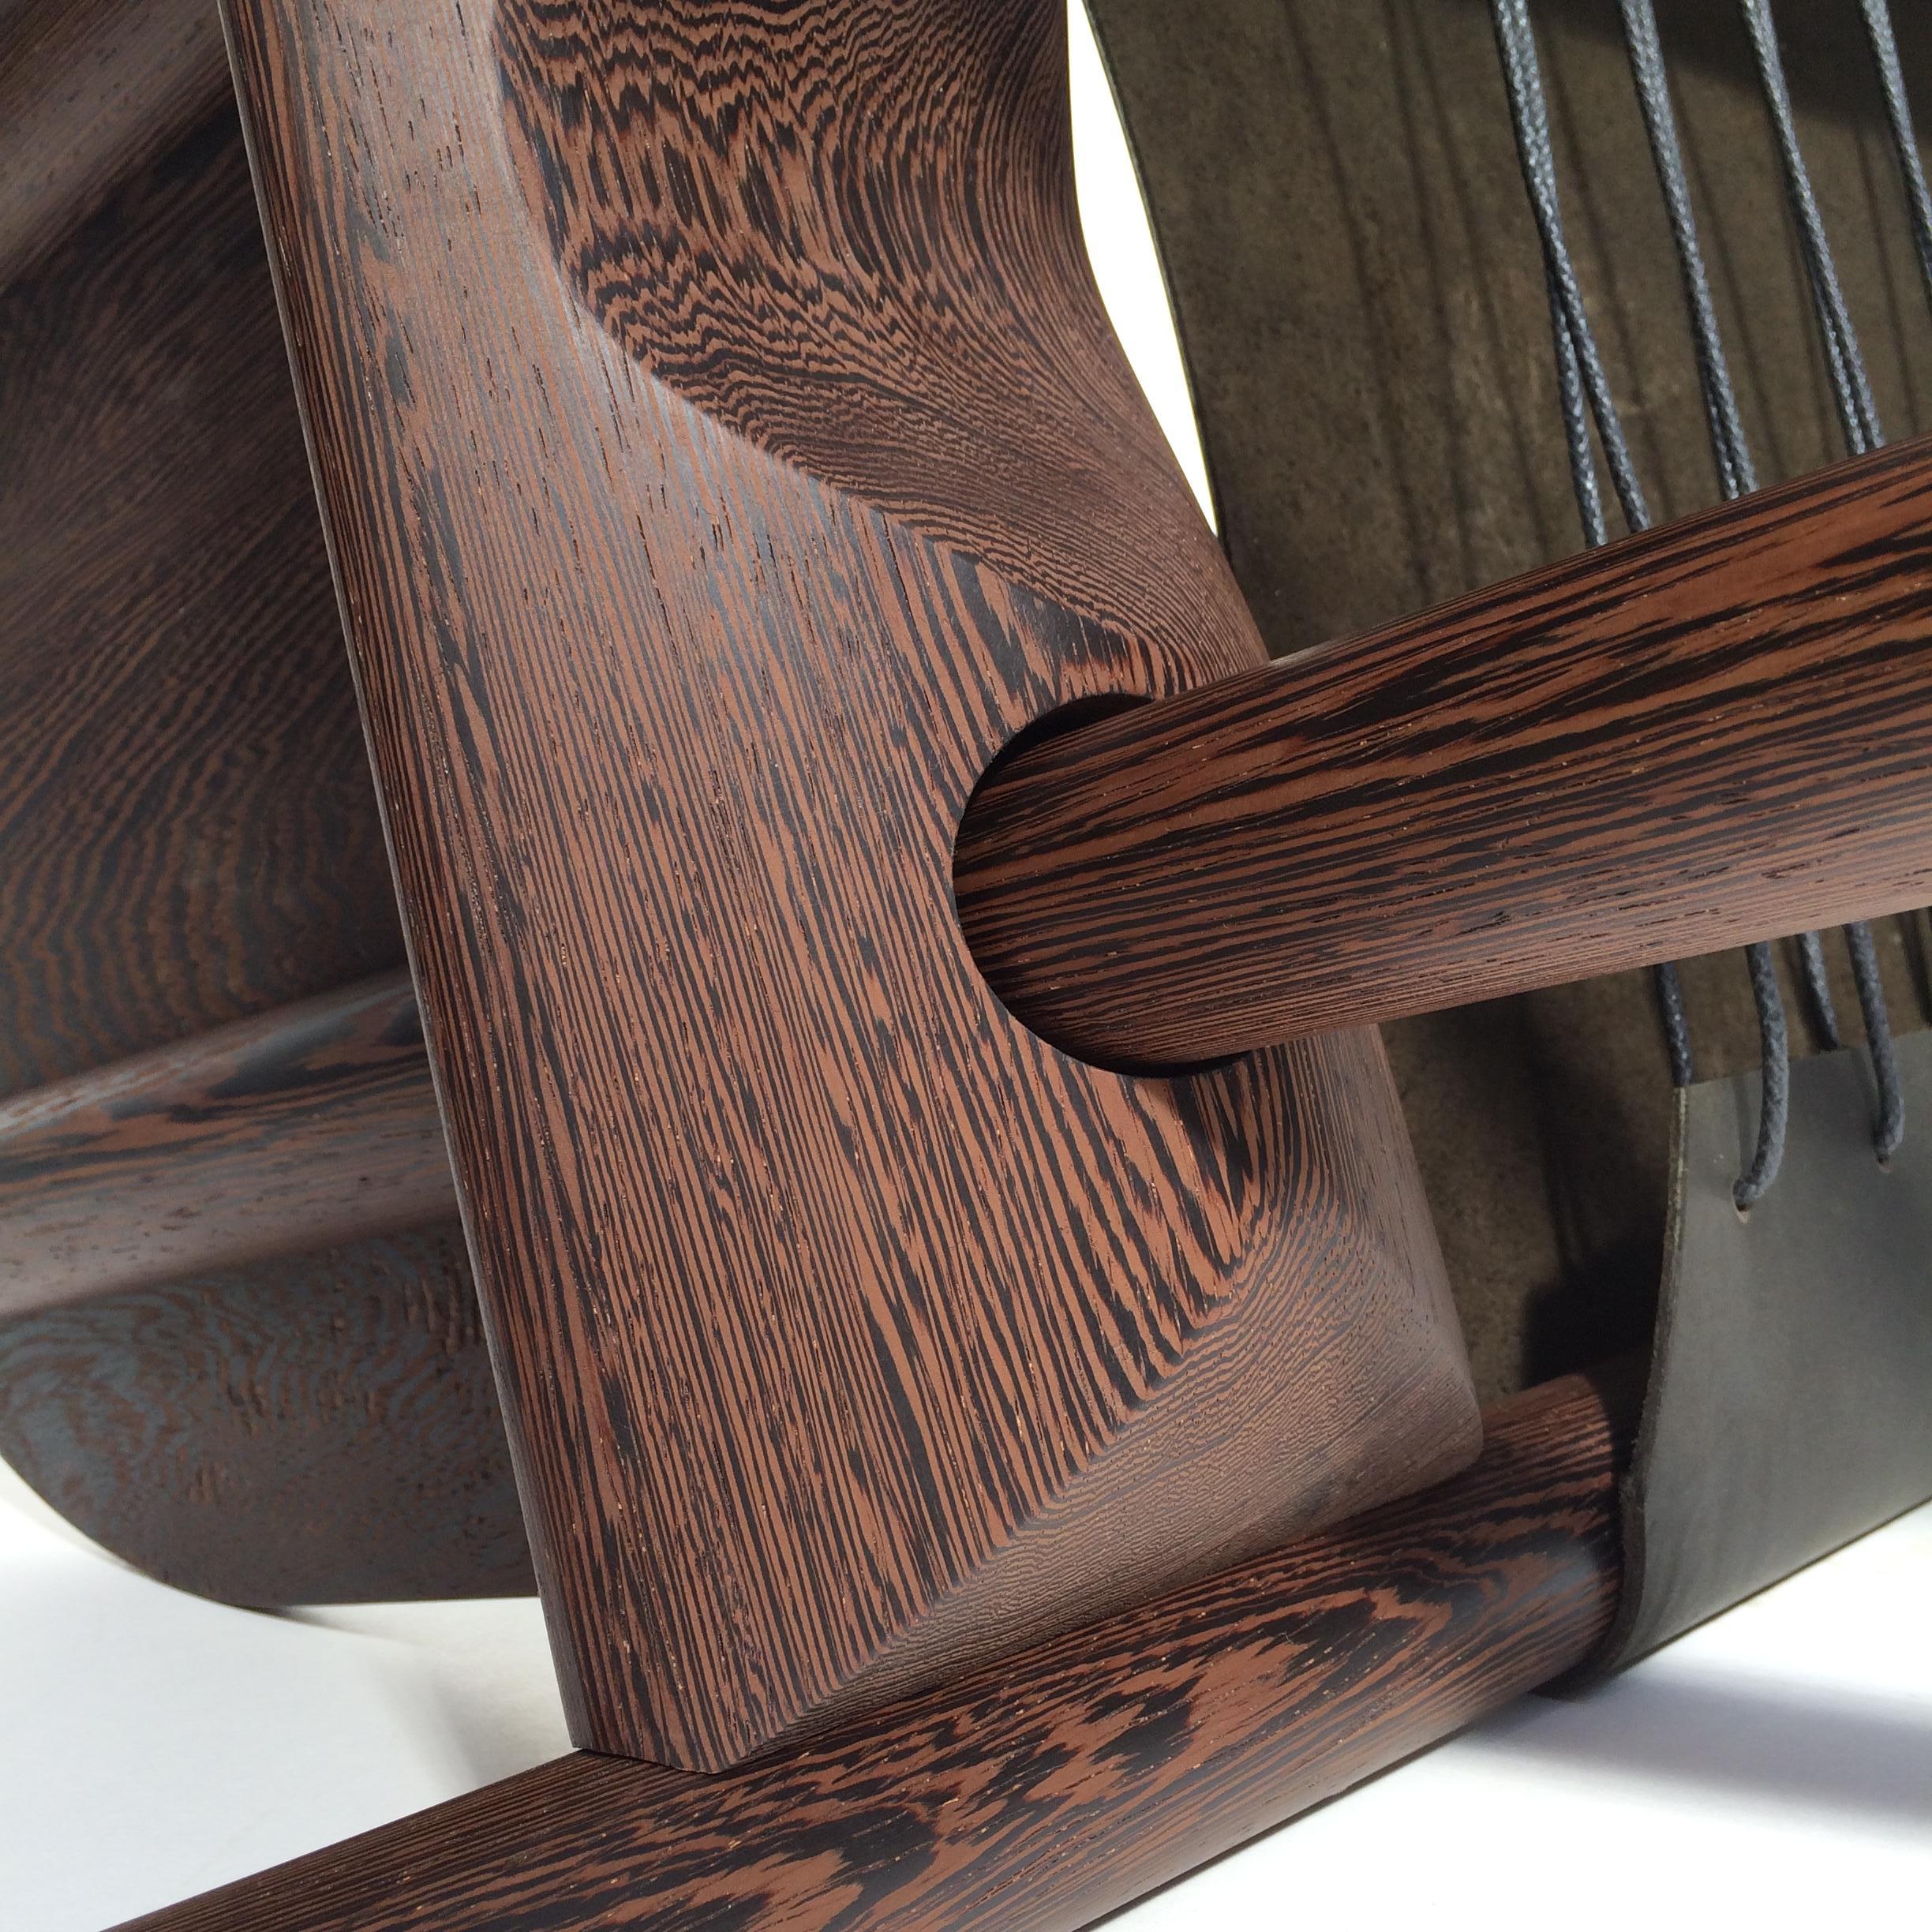 Le designer Ben/One s'est inspiré d'une ancienne chaise d'accouchement africaine de sa collection personnelle de meubles pour créer la chaise Slip. 